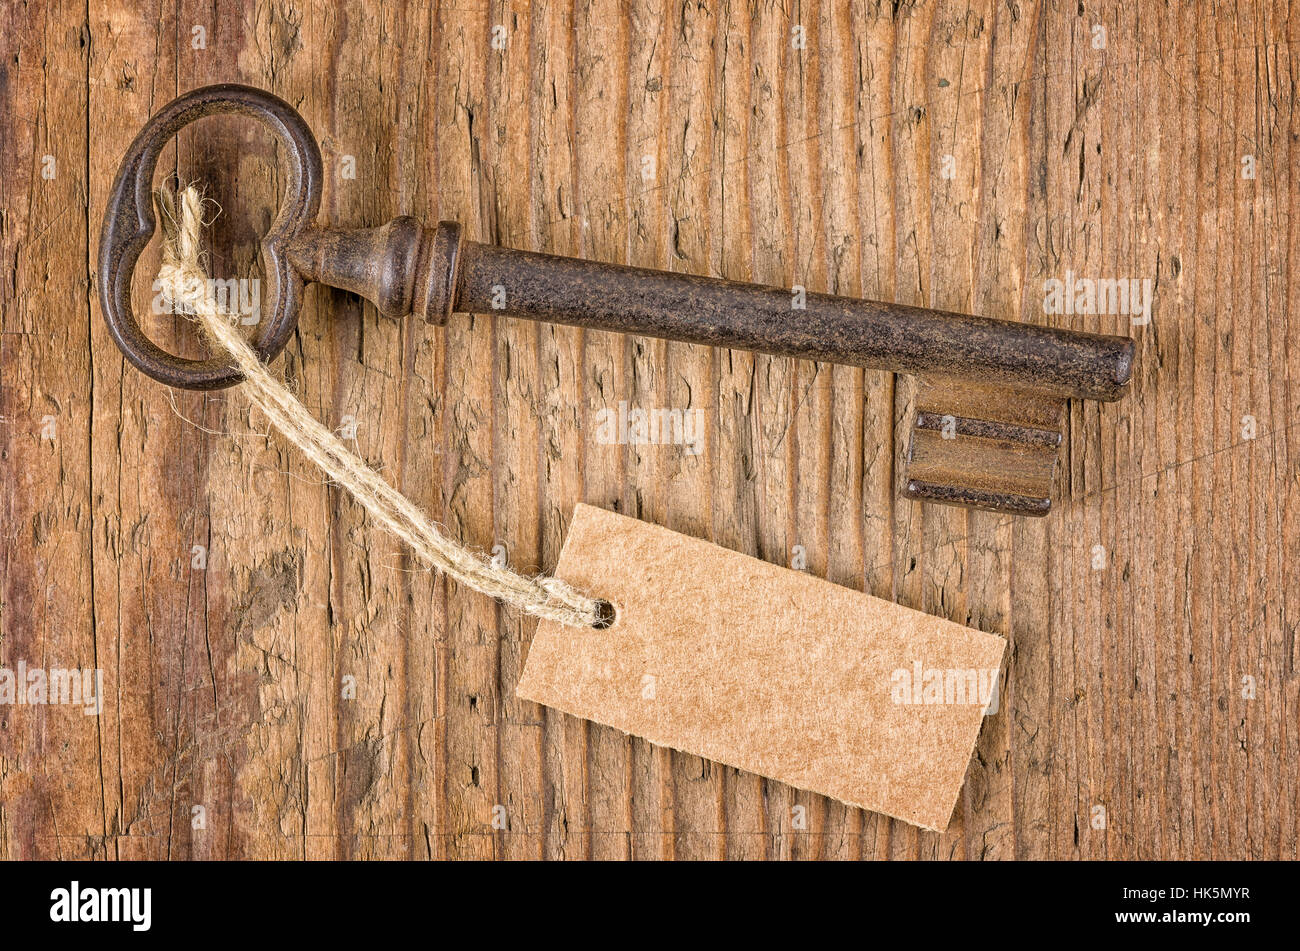 Ancienne clé avec pendentif sur une planche en bois Banque D'Images